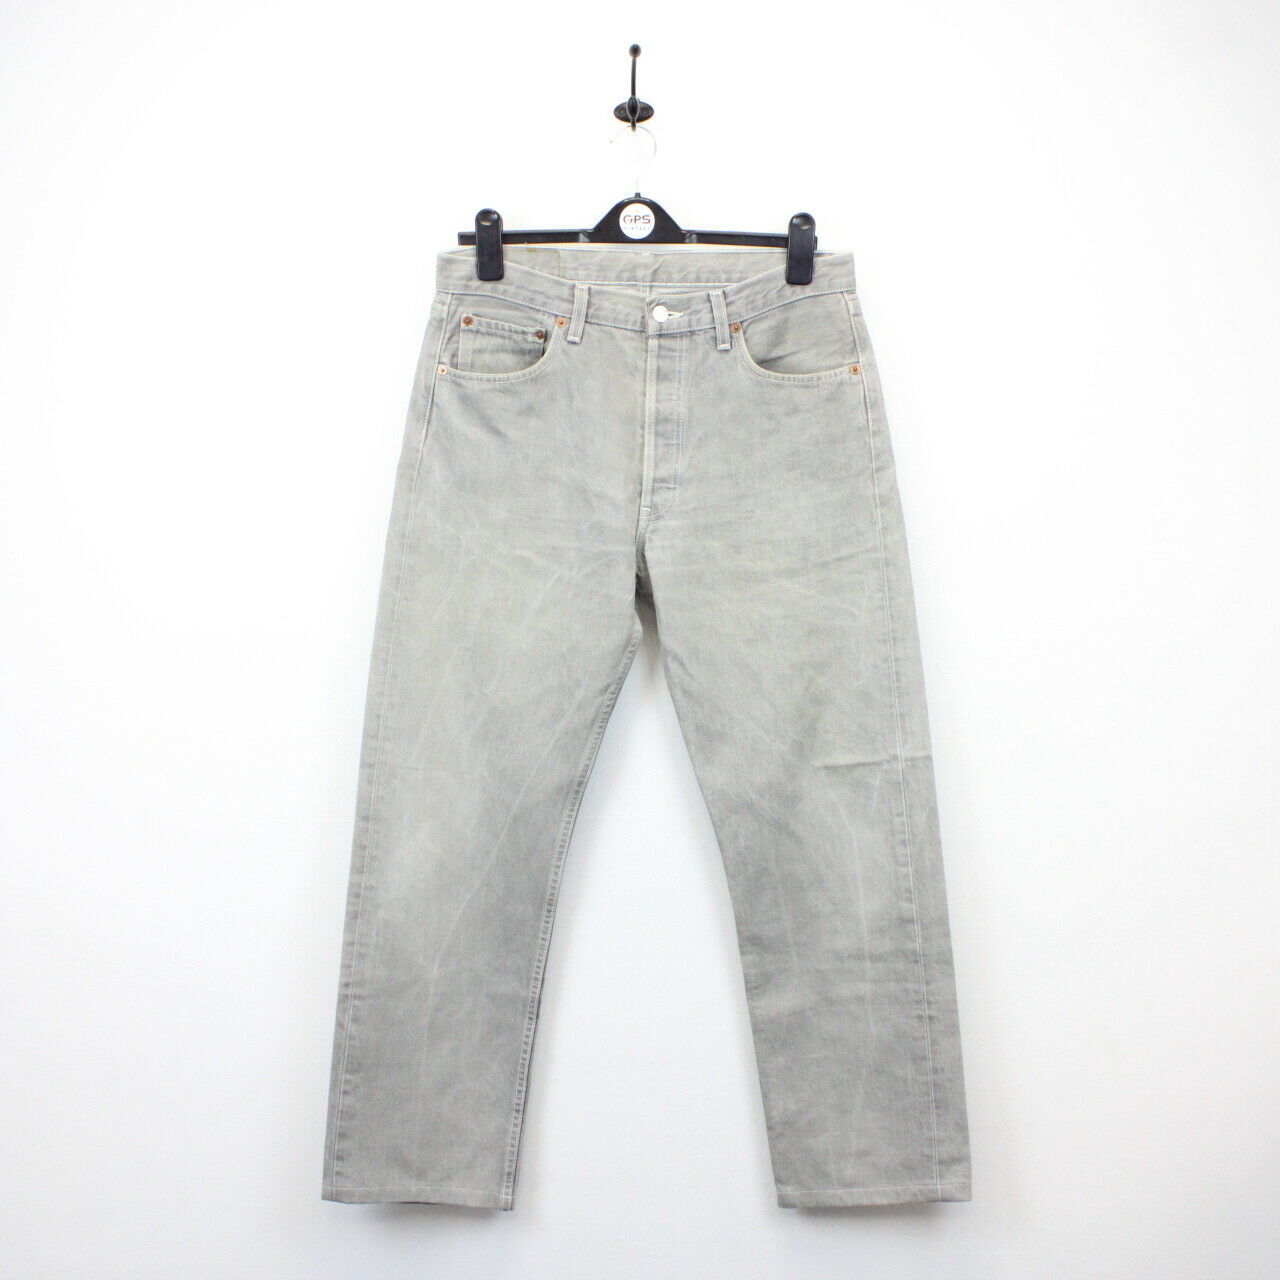 LEVIS 501 XX Jeans Grey | W34 L28